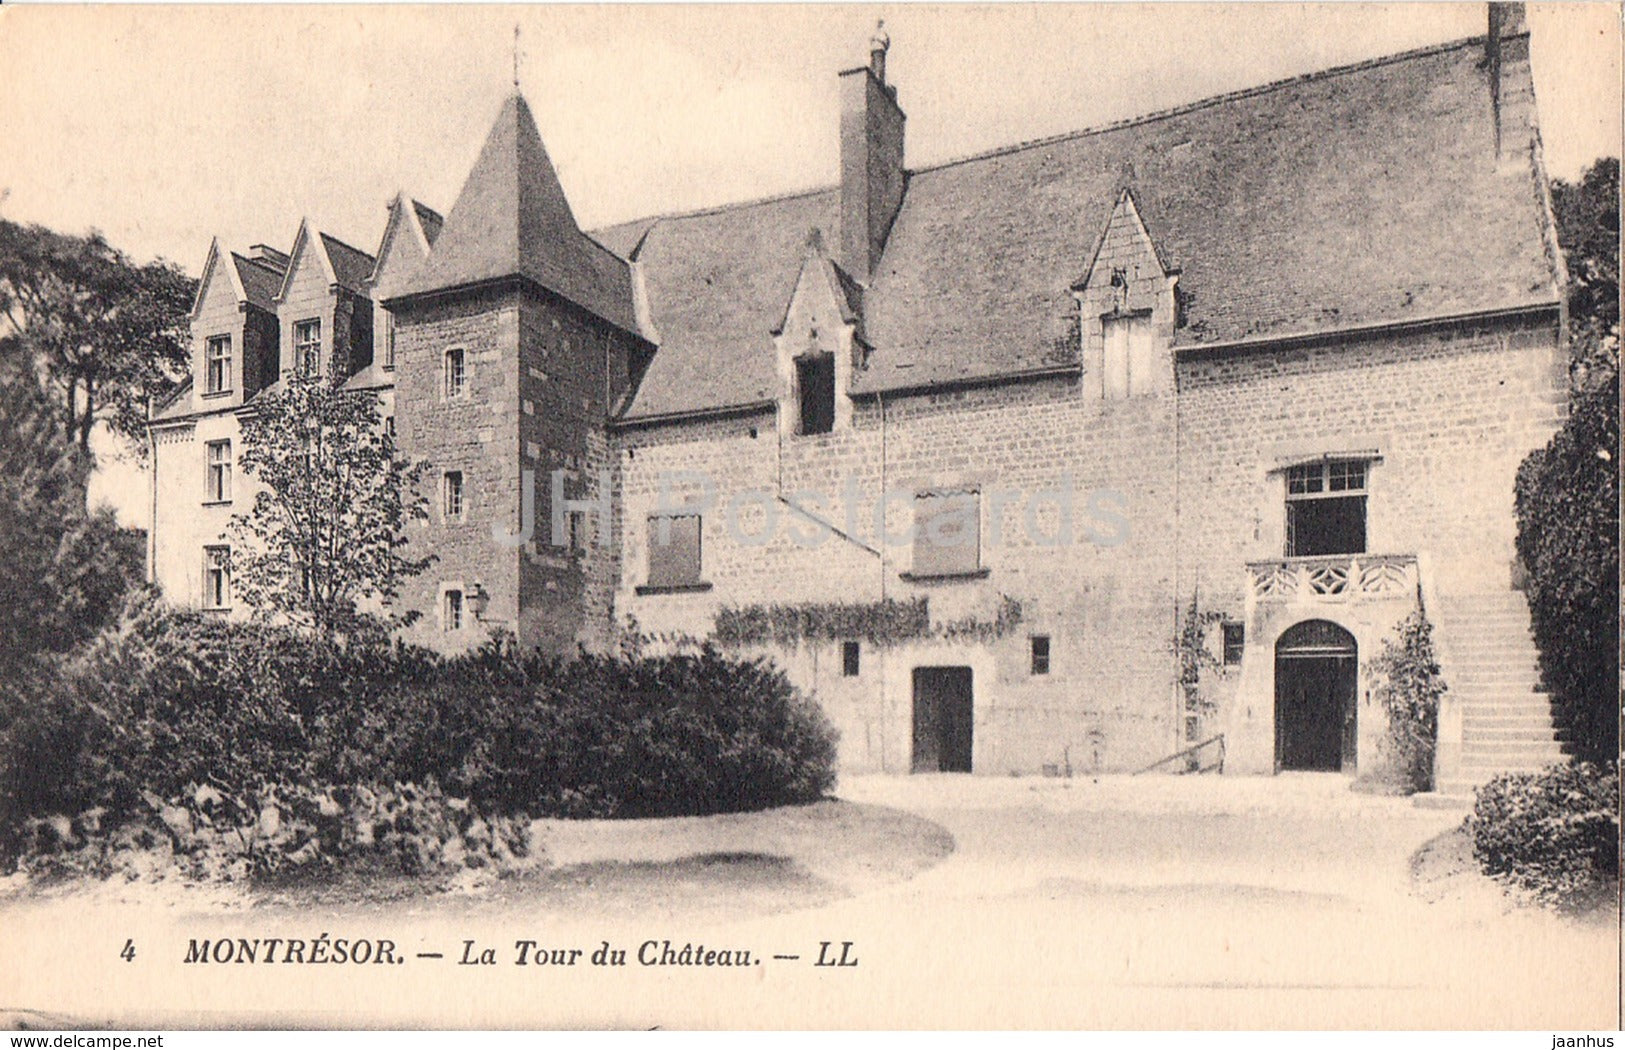 Montresor - La Tour du Chateau - castle - 4 - old postcard - France - unused